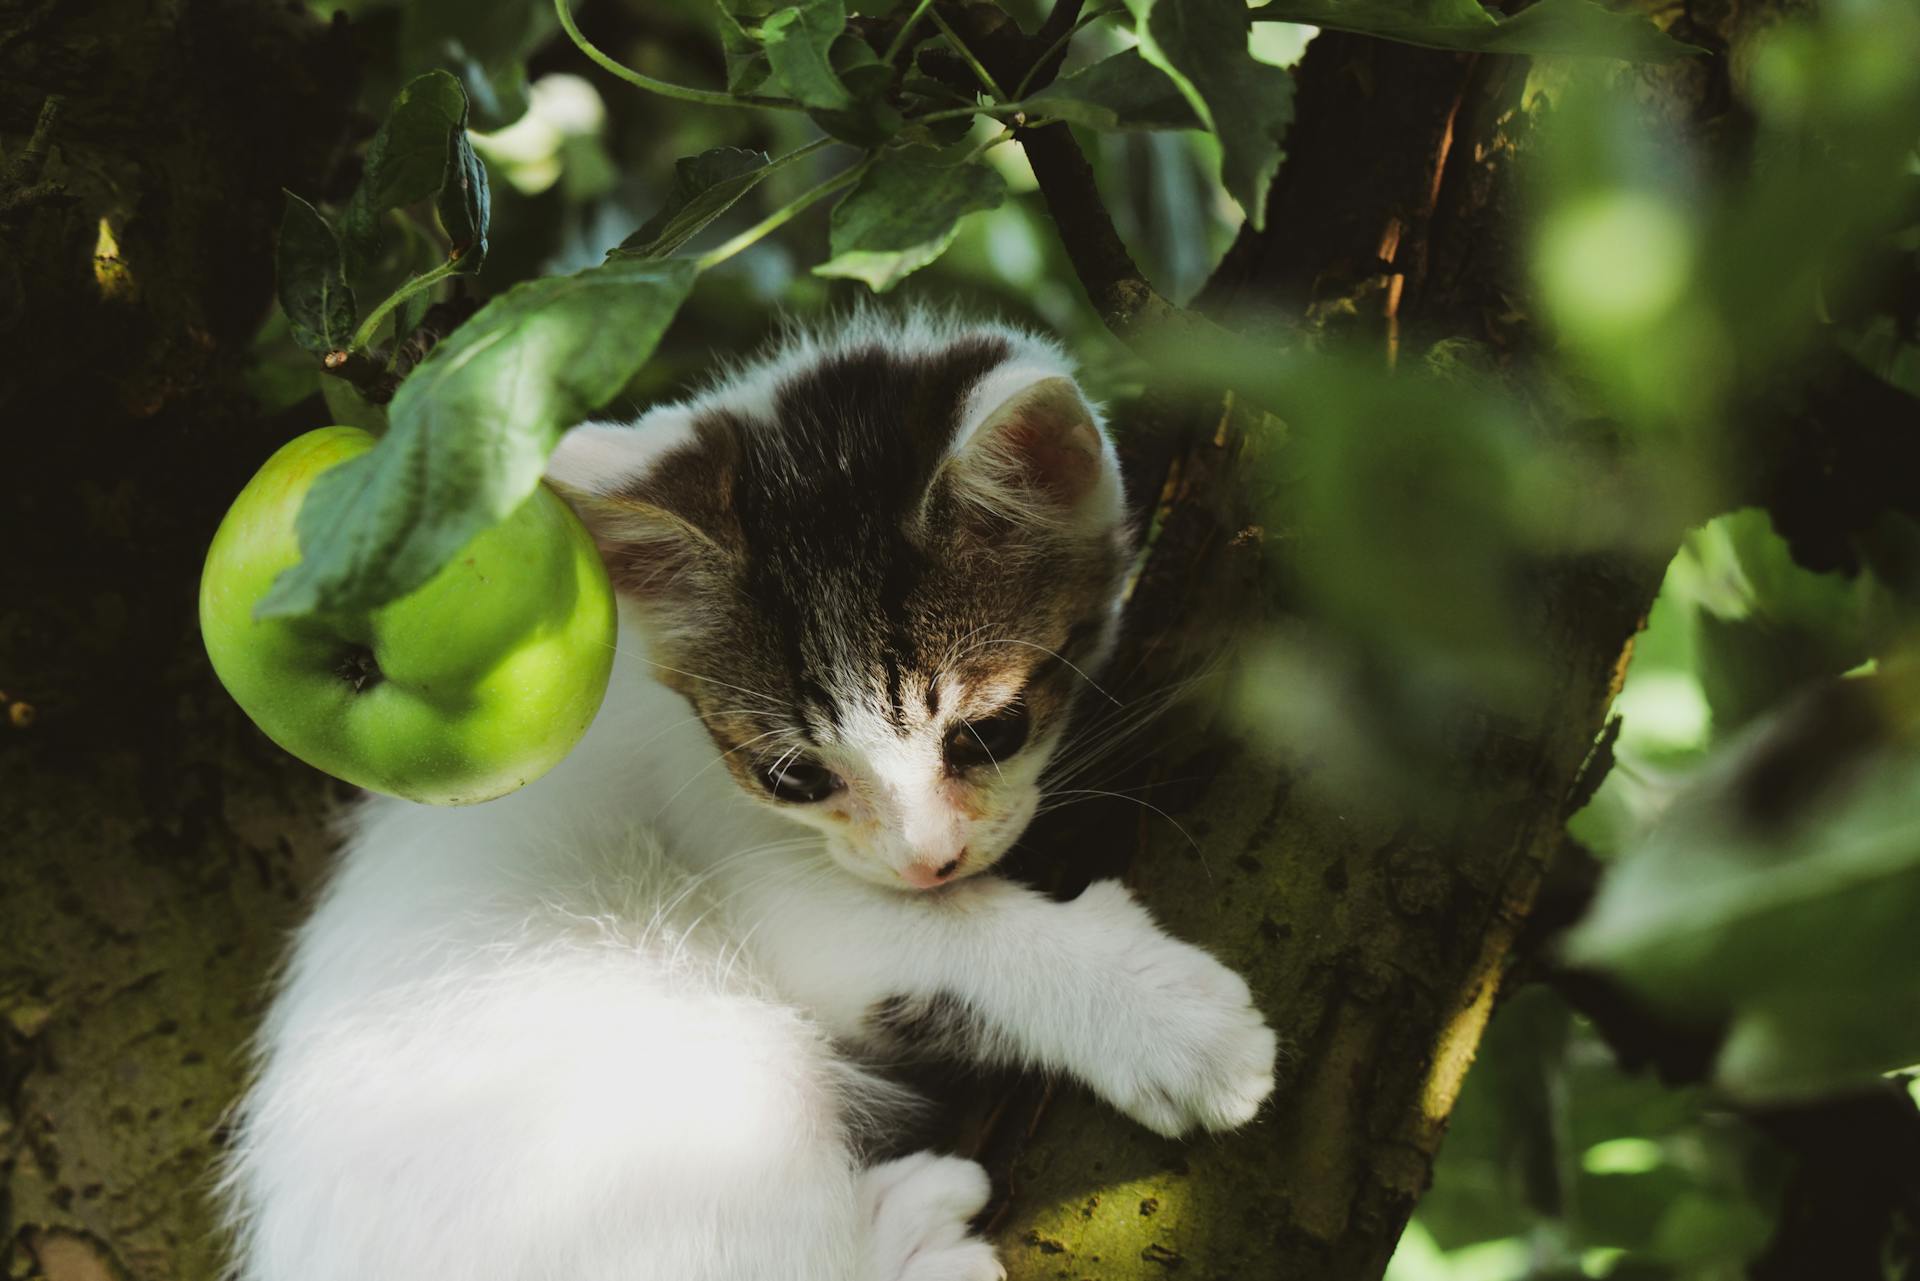 A scared kitten hiding in a tree